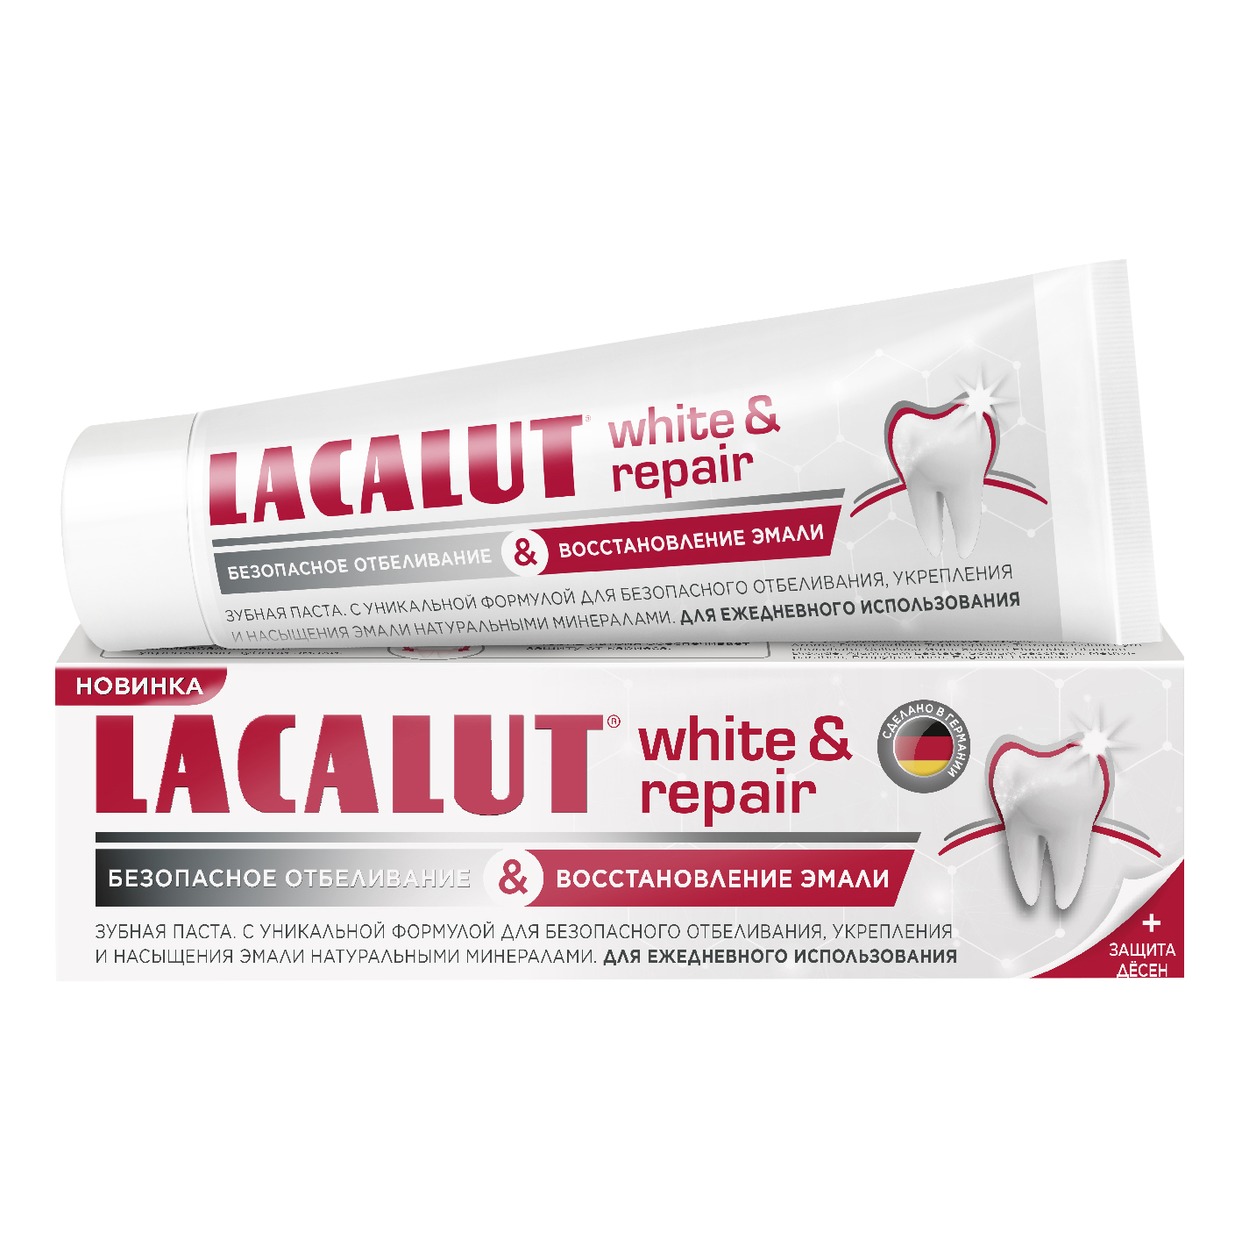 Зубная паста Lacalut White&Repair, в ассортименте, 50 мл по акции в Пятерочке